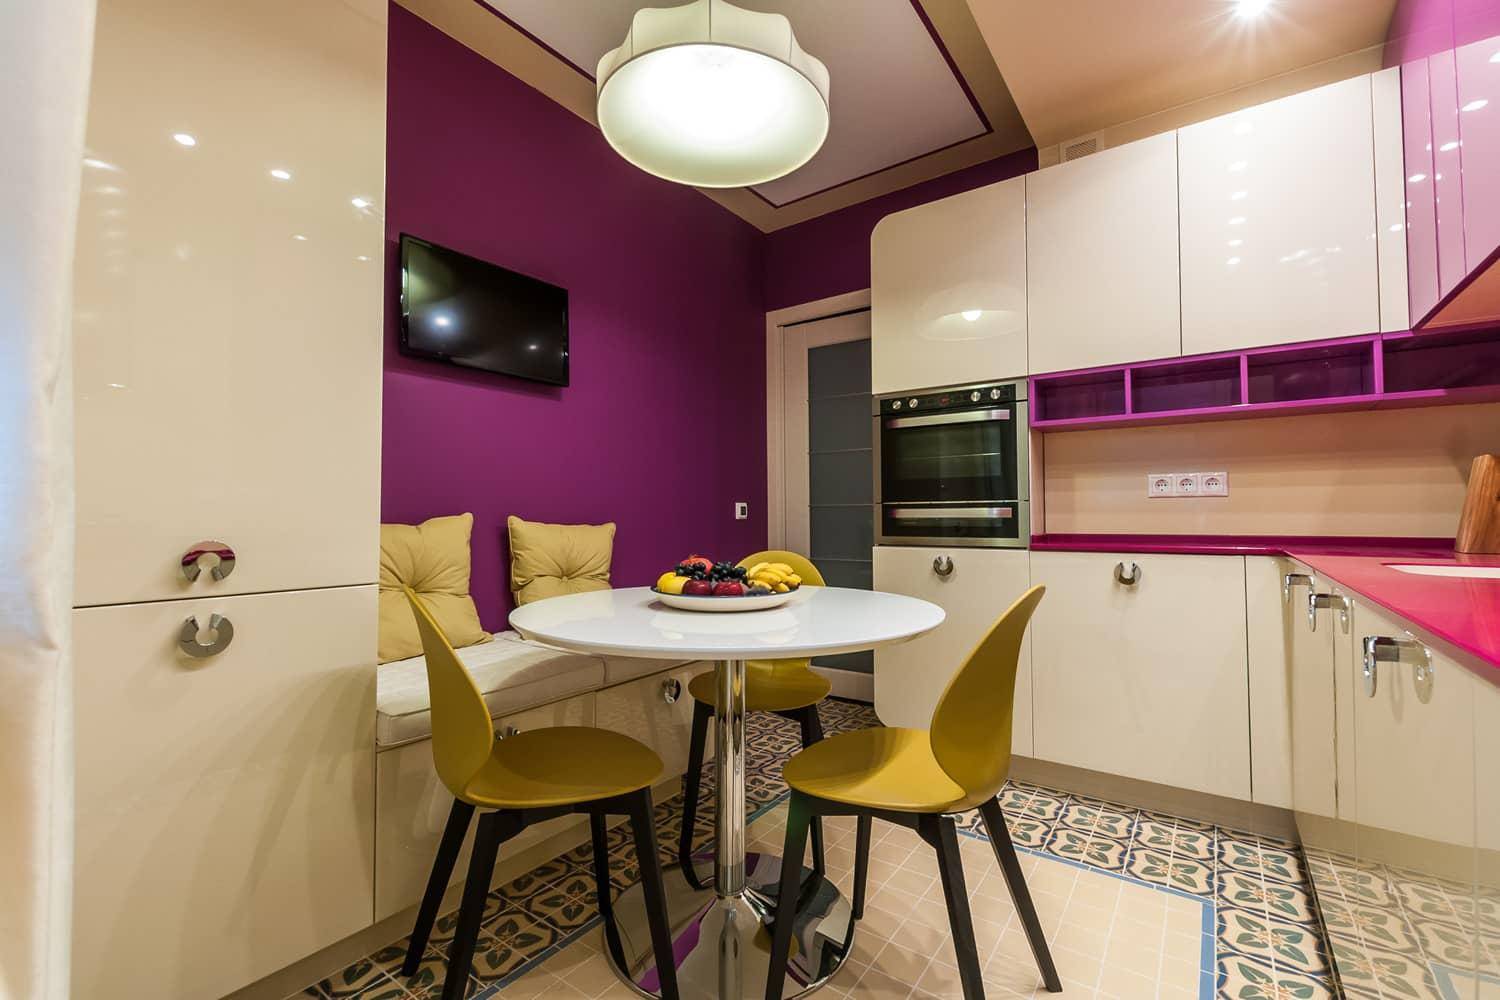 Ремонт кухни в квартире: дизайн кухни (800+ реальных фото) от 5 до 20 кв м — лучшие идеи интерьеров